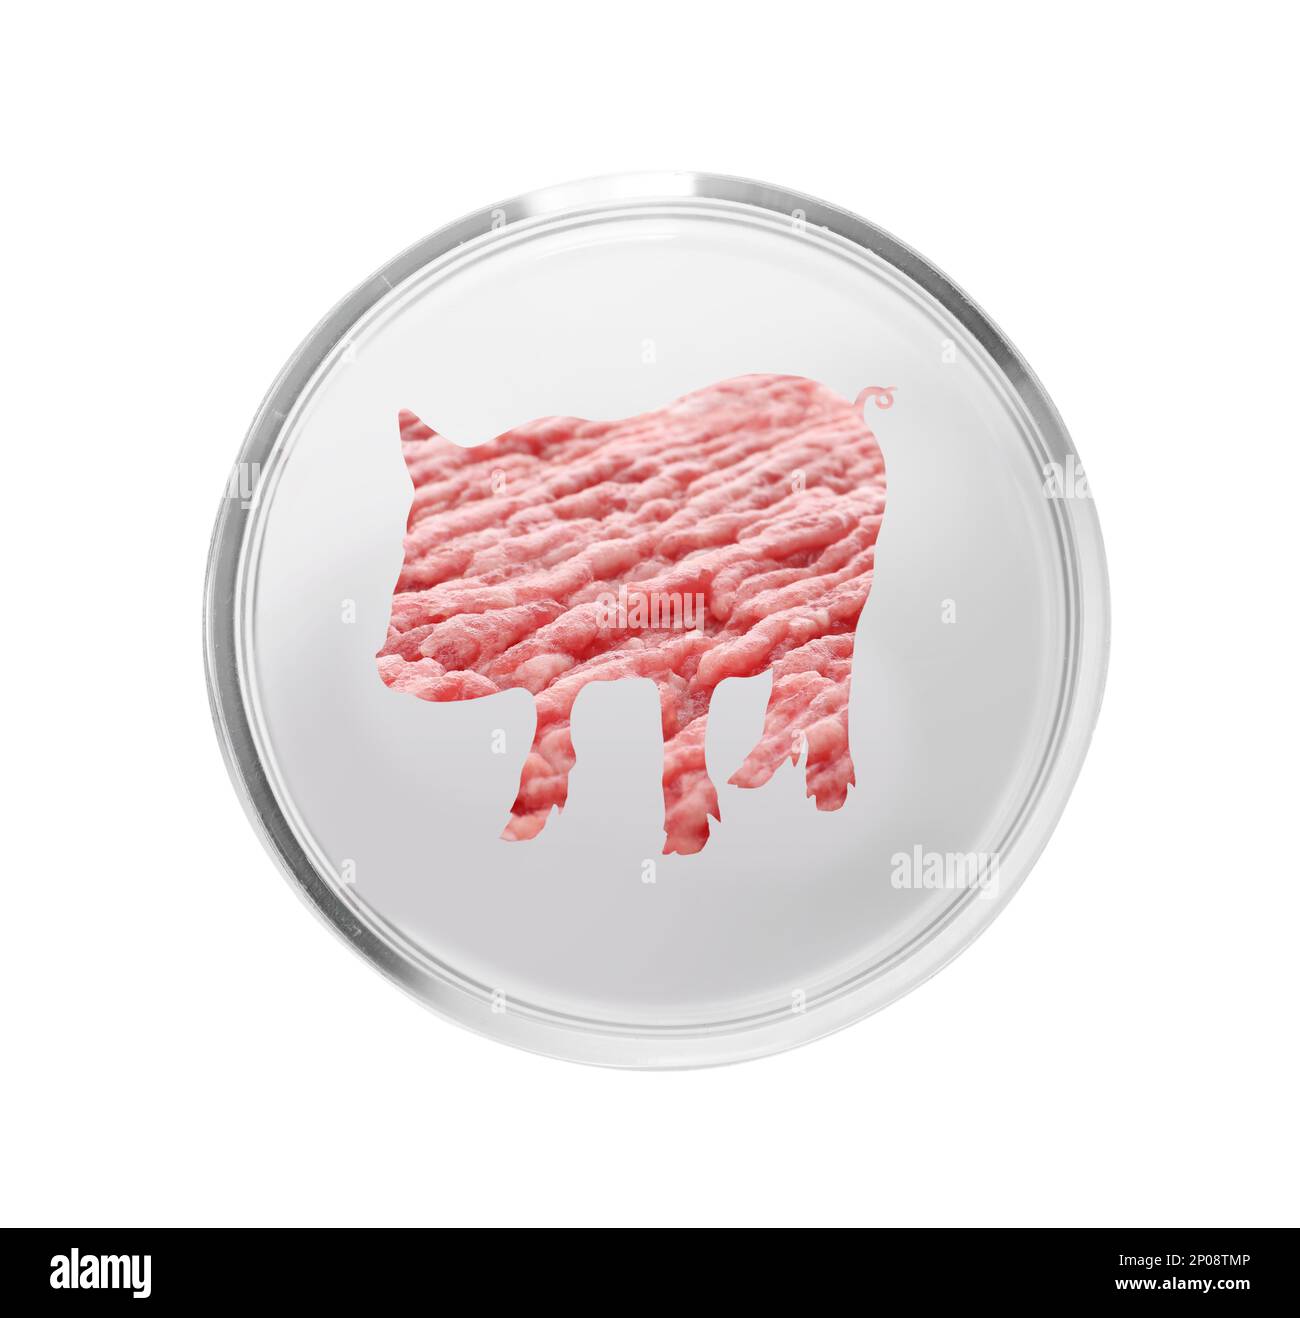 Silhouette de porc avec hache de porc dans un plat de pétri sur fond blanc. Concept de viande de culture Banque D'Images